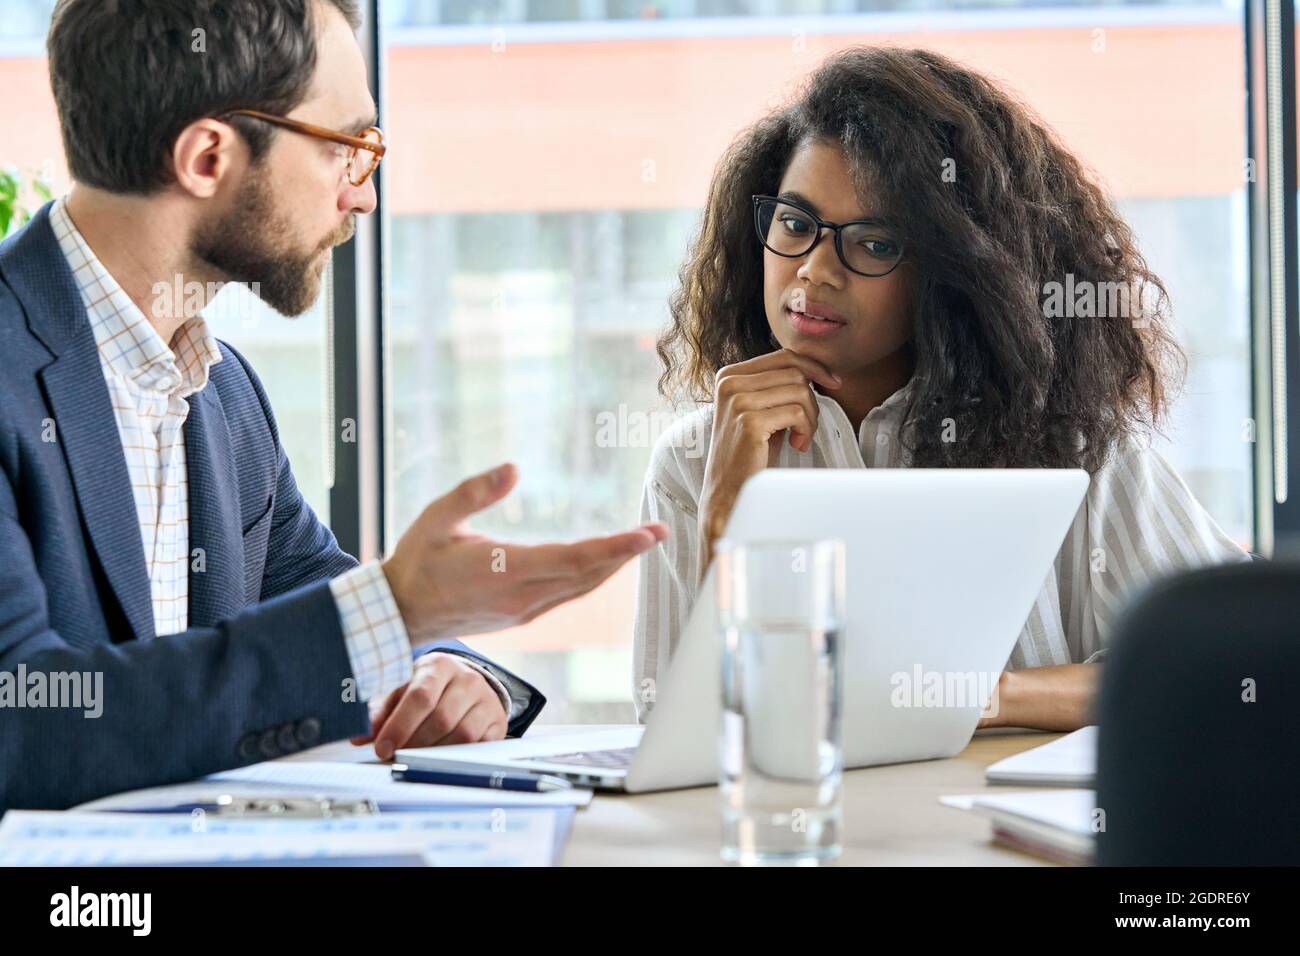 Capo mentore maschile che parla con una tirocinante femminile durante la riunione nella sala riunioni. Foto Stock